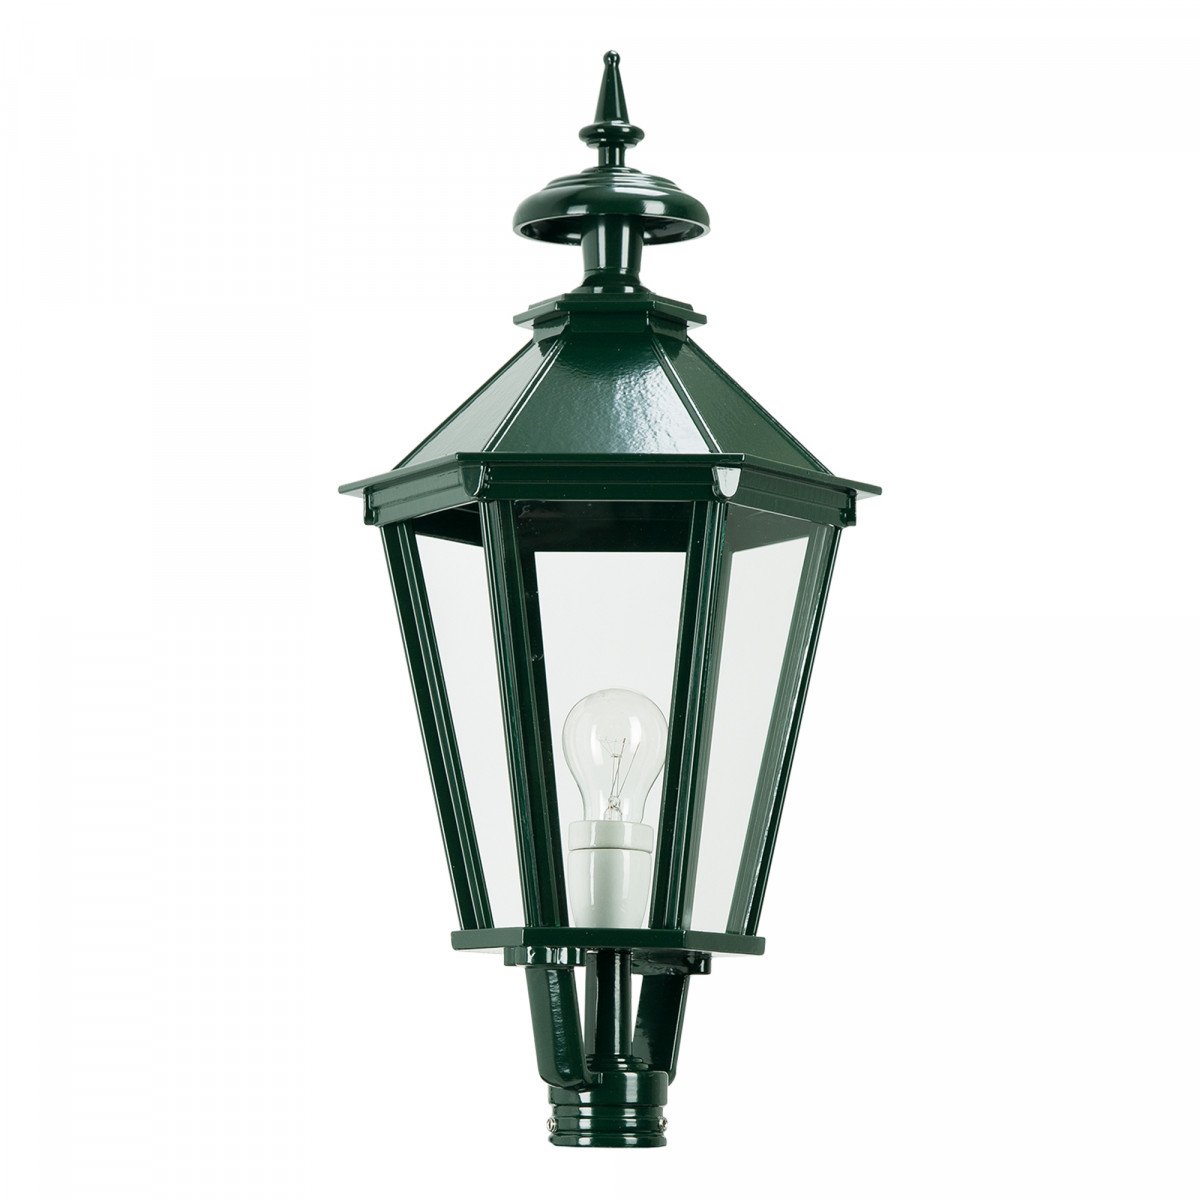 Lanterne seule K7 hexagonale éclairage d'extérieur (1506) de KS Lighting - Abat-jour, poteaux, supports